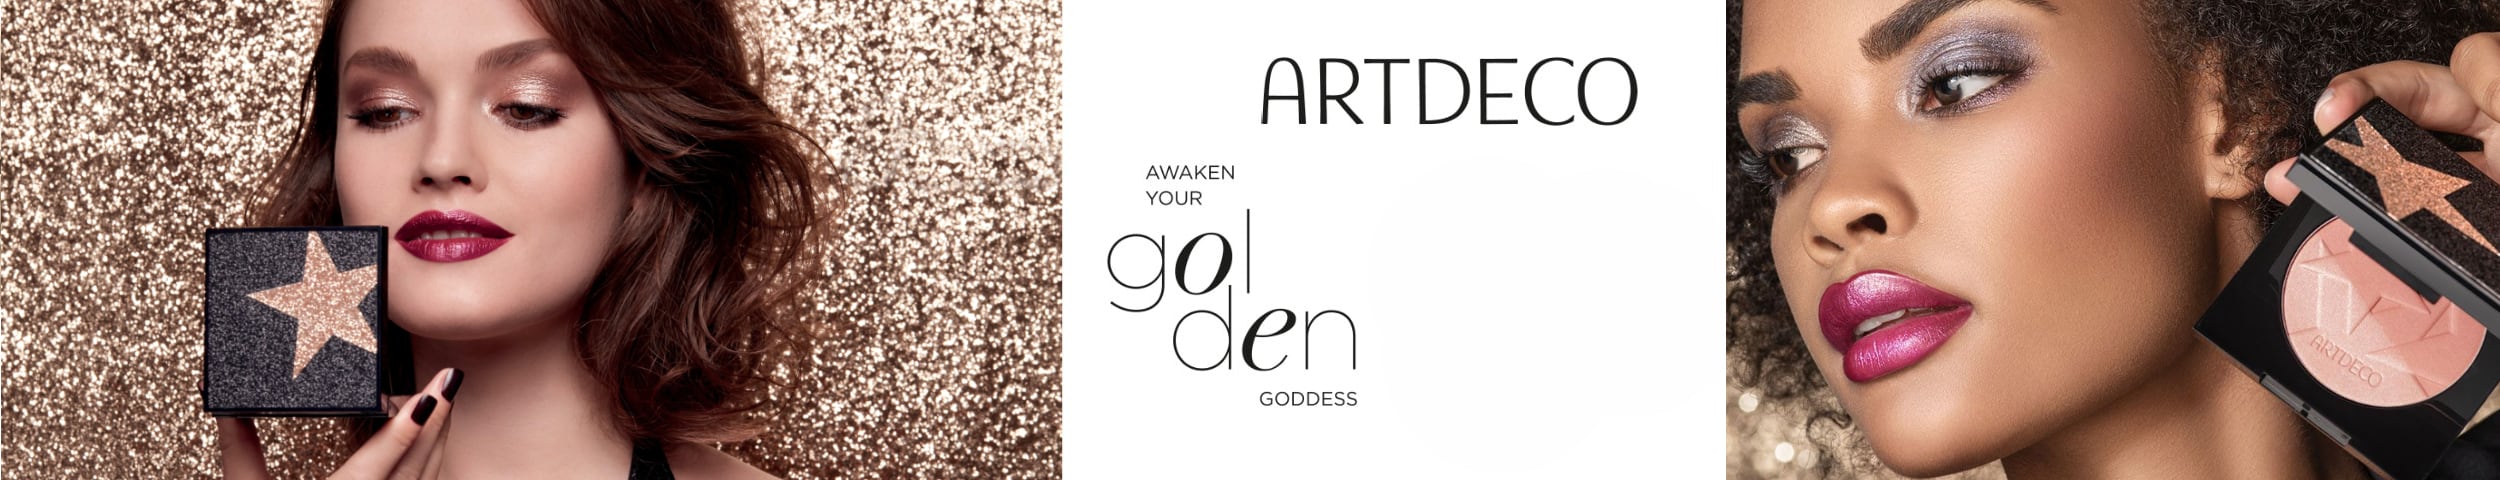 Artdeco awaken your golden goddess